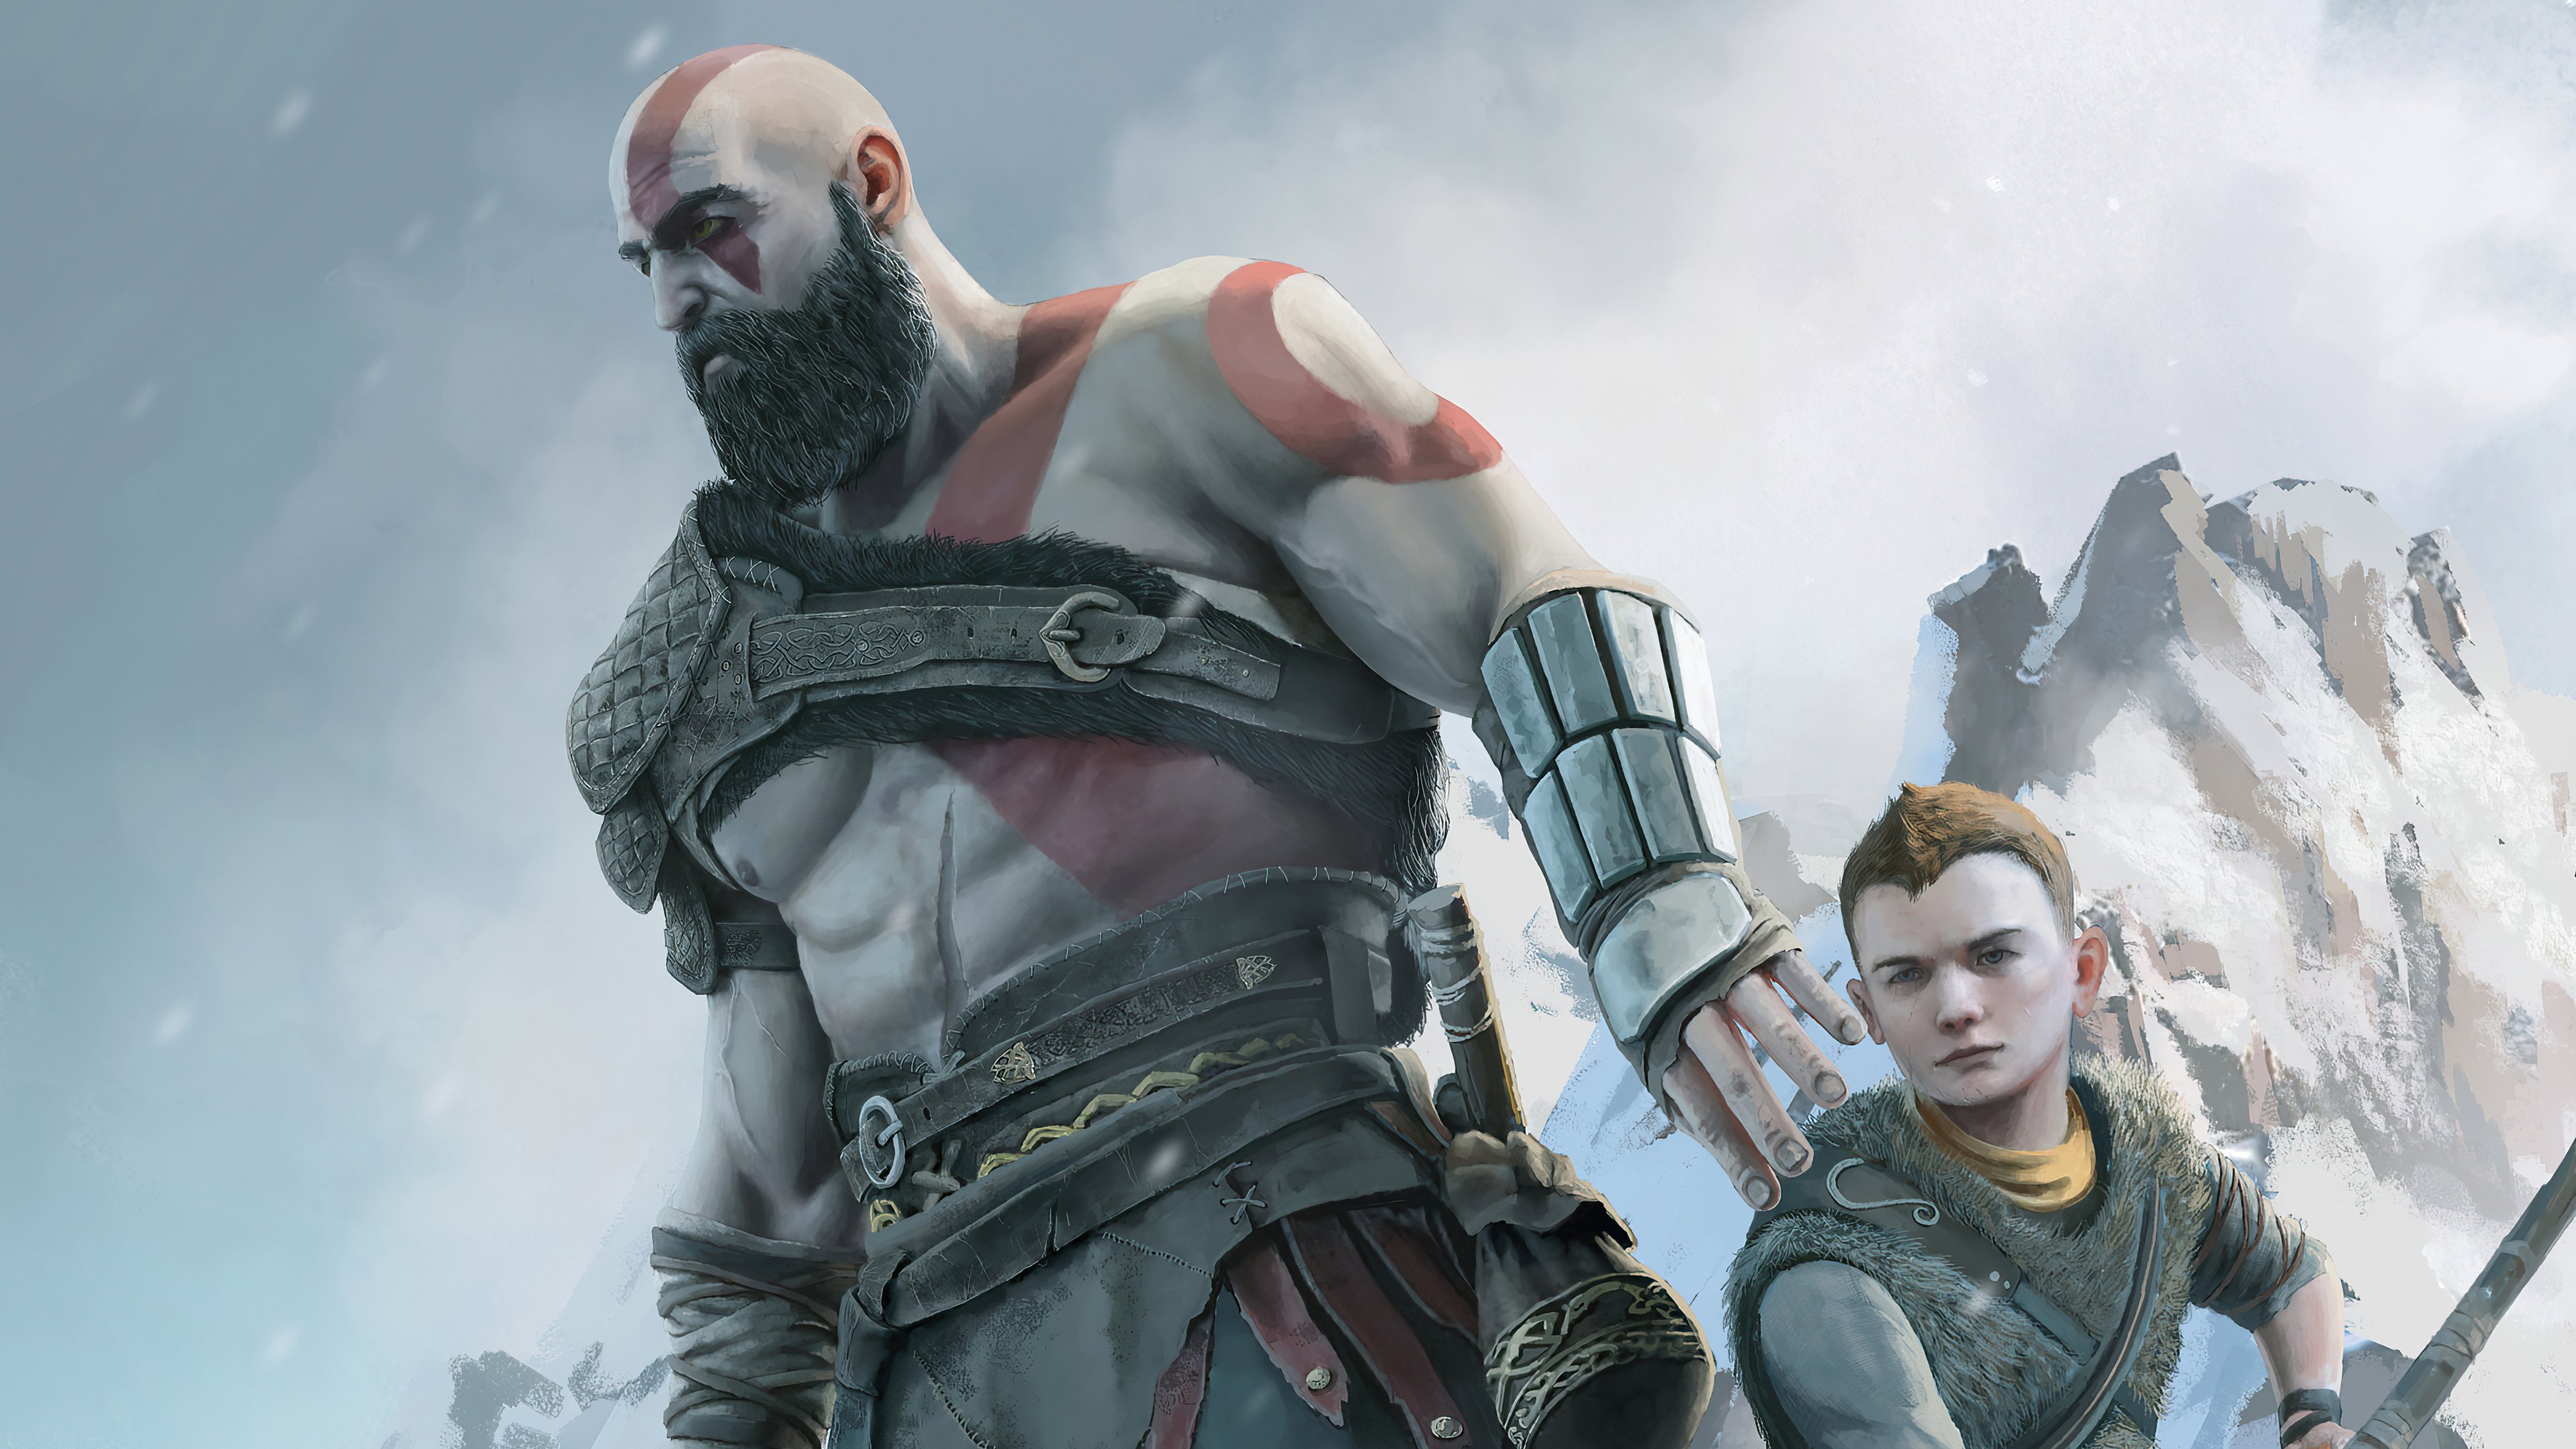 Fondos de pantalla Kratos y Atreus de God of war